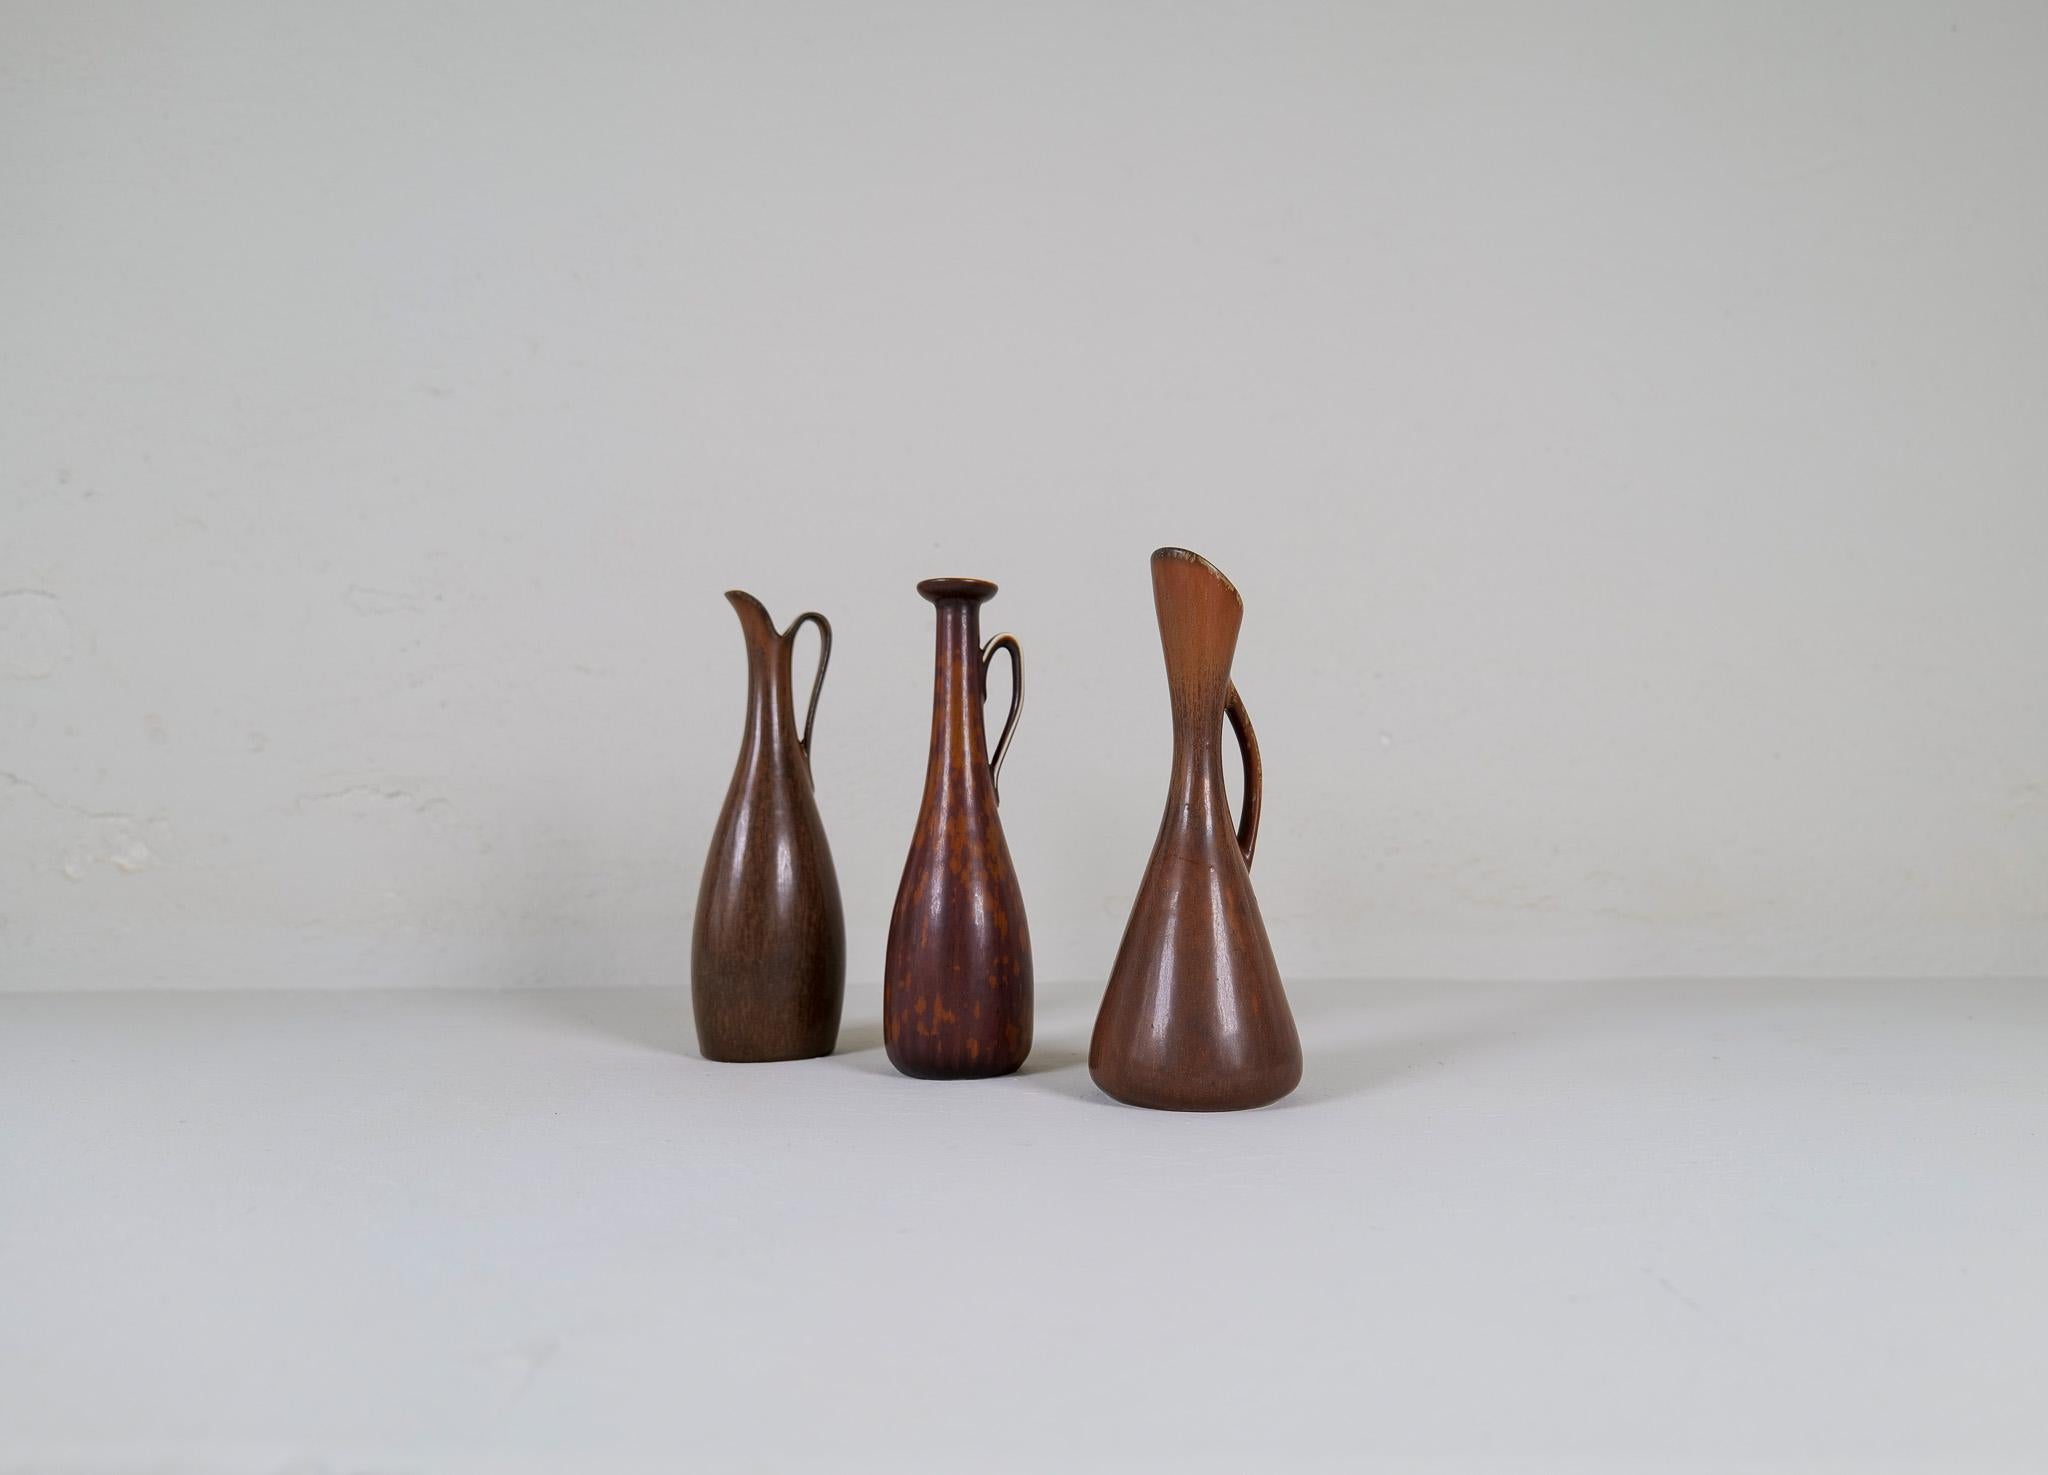 Trois magnifiques pièces/vases fabriqués en Suède dans les années 1950 à l'usine de Rörstrand et conçus par Gunnar Nylund.
Des vases magnifiques avec cette glaçure harefur caractéristique. 

Bon état vintage. 

Dimensions H 23cm D 10 cm.